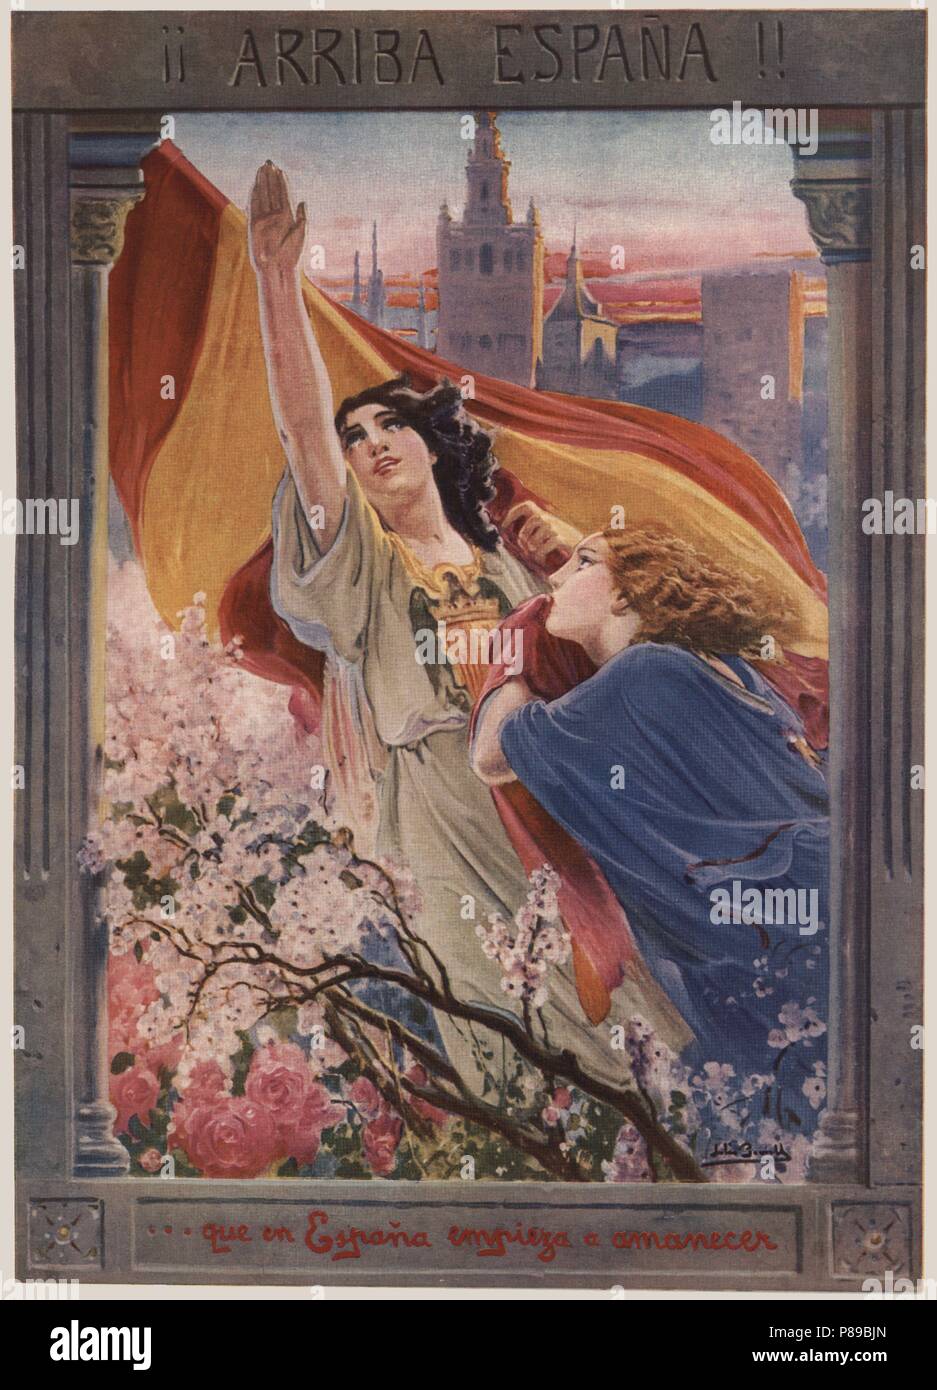 Cartel alegórico del alzamiento nacional de España. Figura femenina saludando con el brazo en alto y el escudo de España en su pecho. Año 1940. Stock Photo